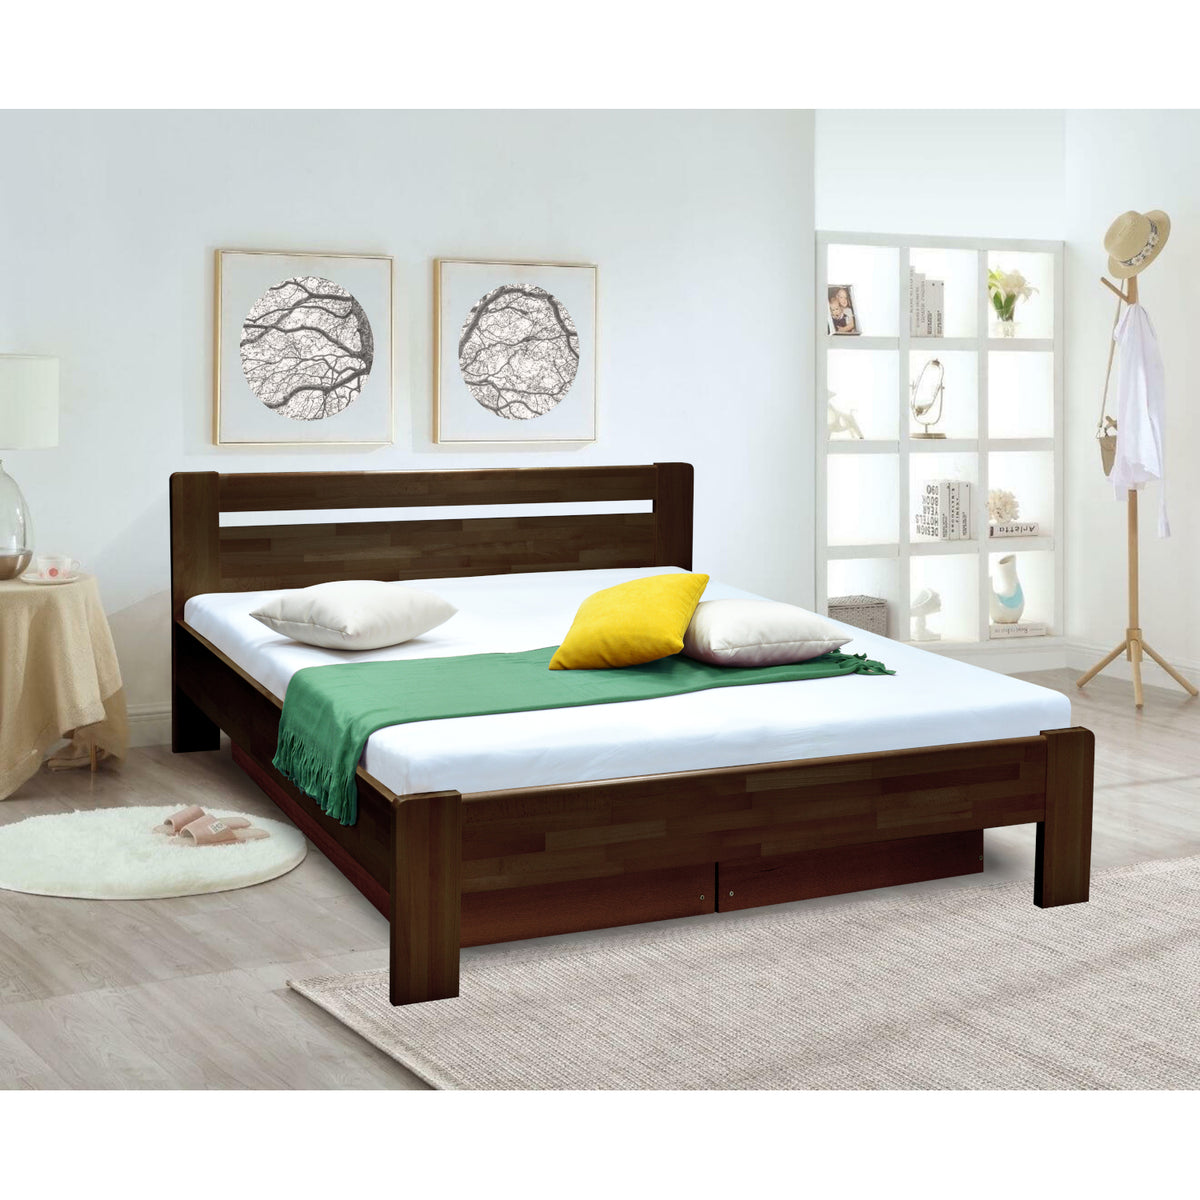 Masivní postel Maribo 2, 180x200, vč. roštu, bez matr., tm.ořech